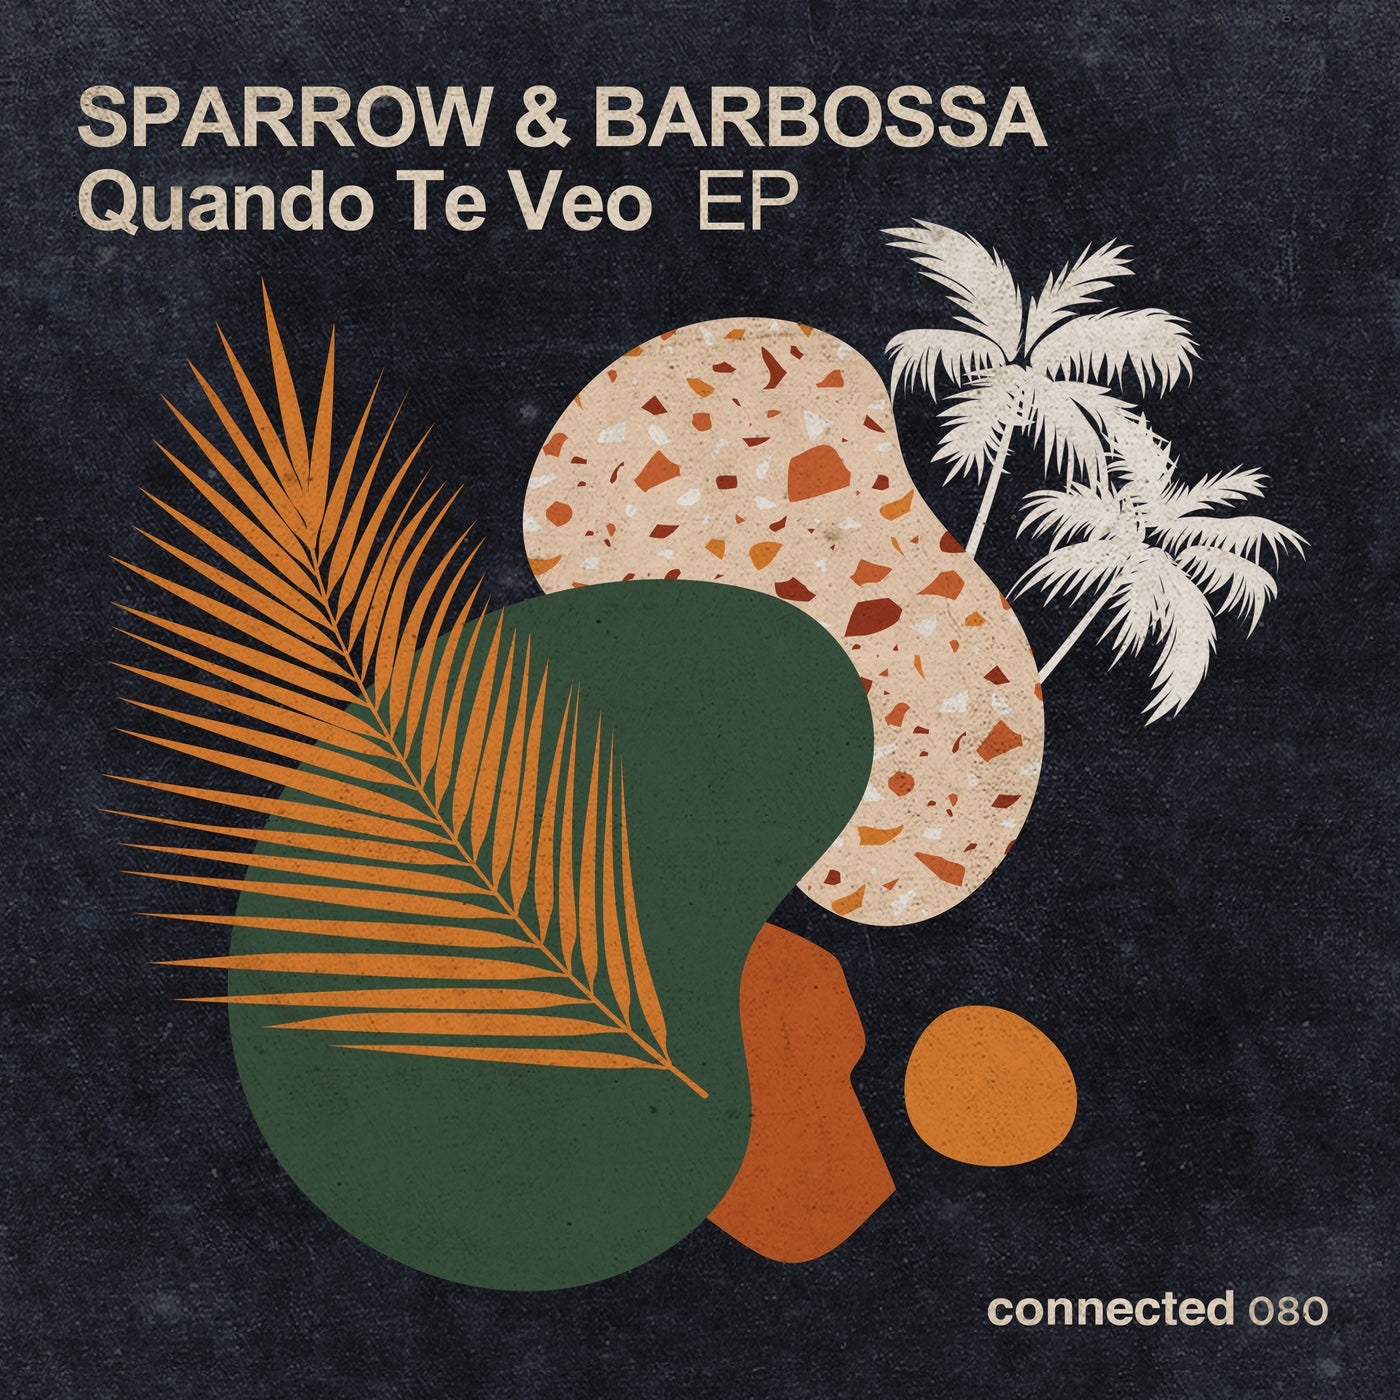 image cover: Mo' Horizons, Sparrow & Barbossa, Francis Coletta - Quando Te Veo EP / 612412